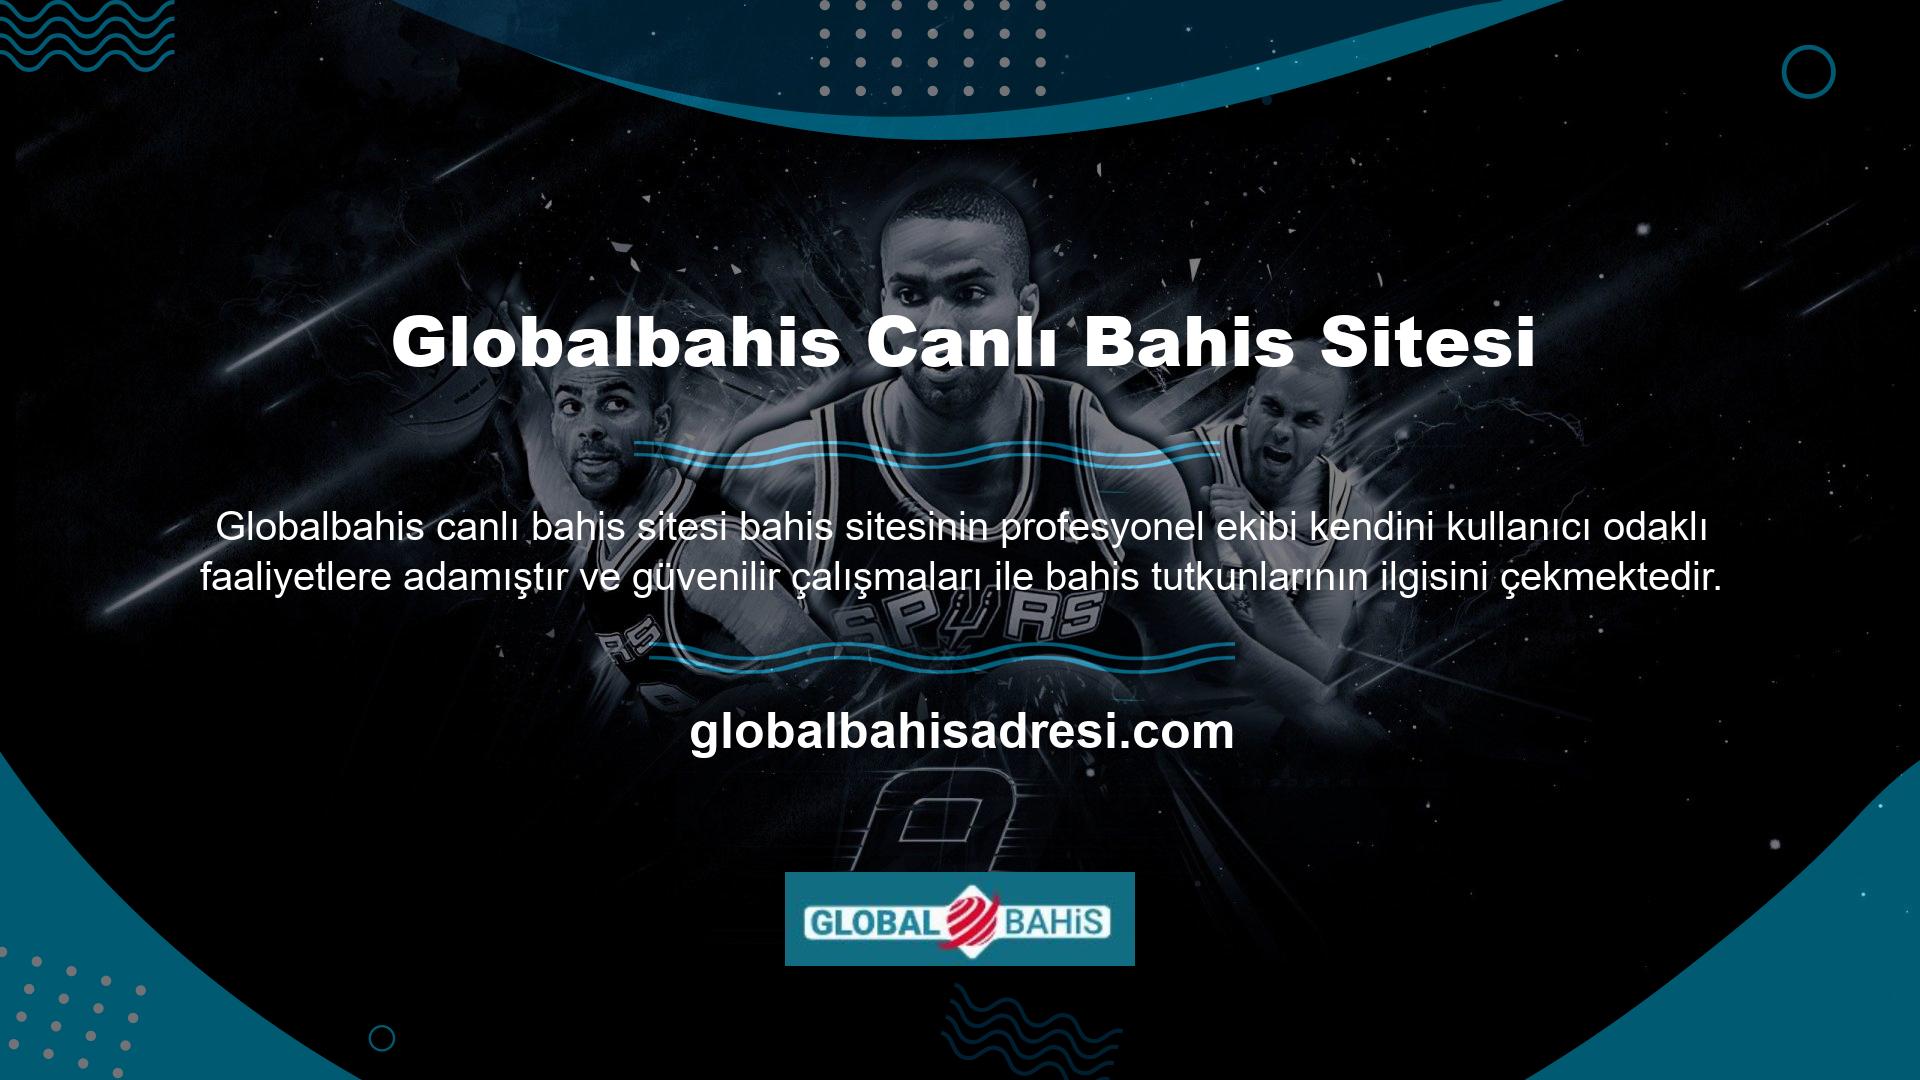 Globalbahis bahis sitesi, en popüler çevrimiçi bahis sitelerinden biridir